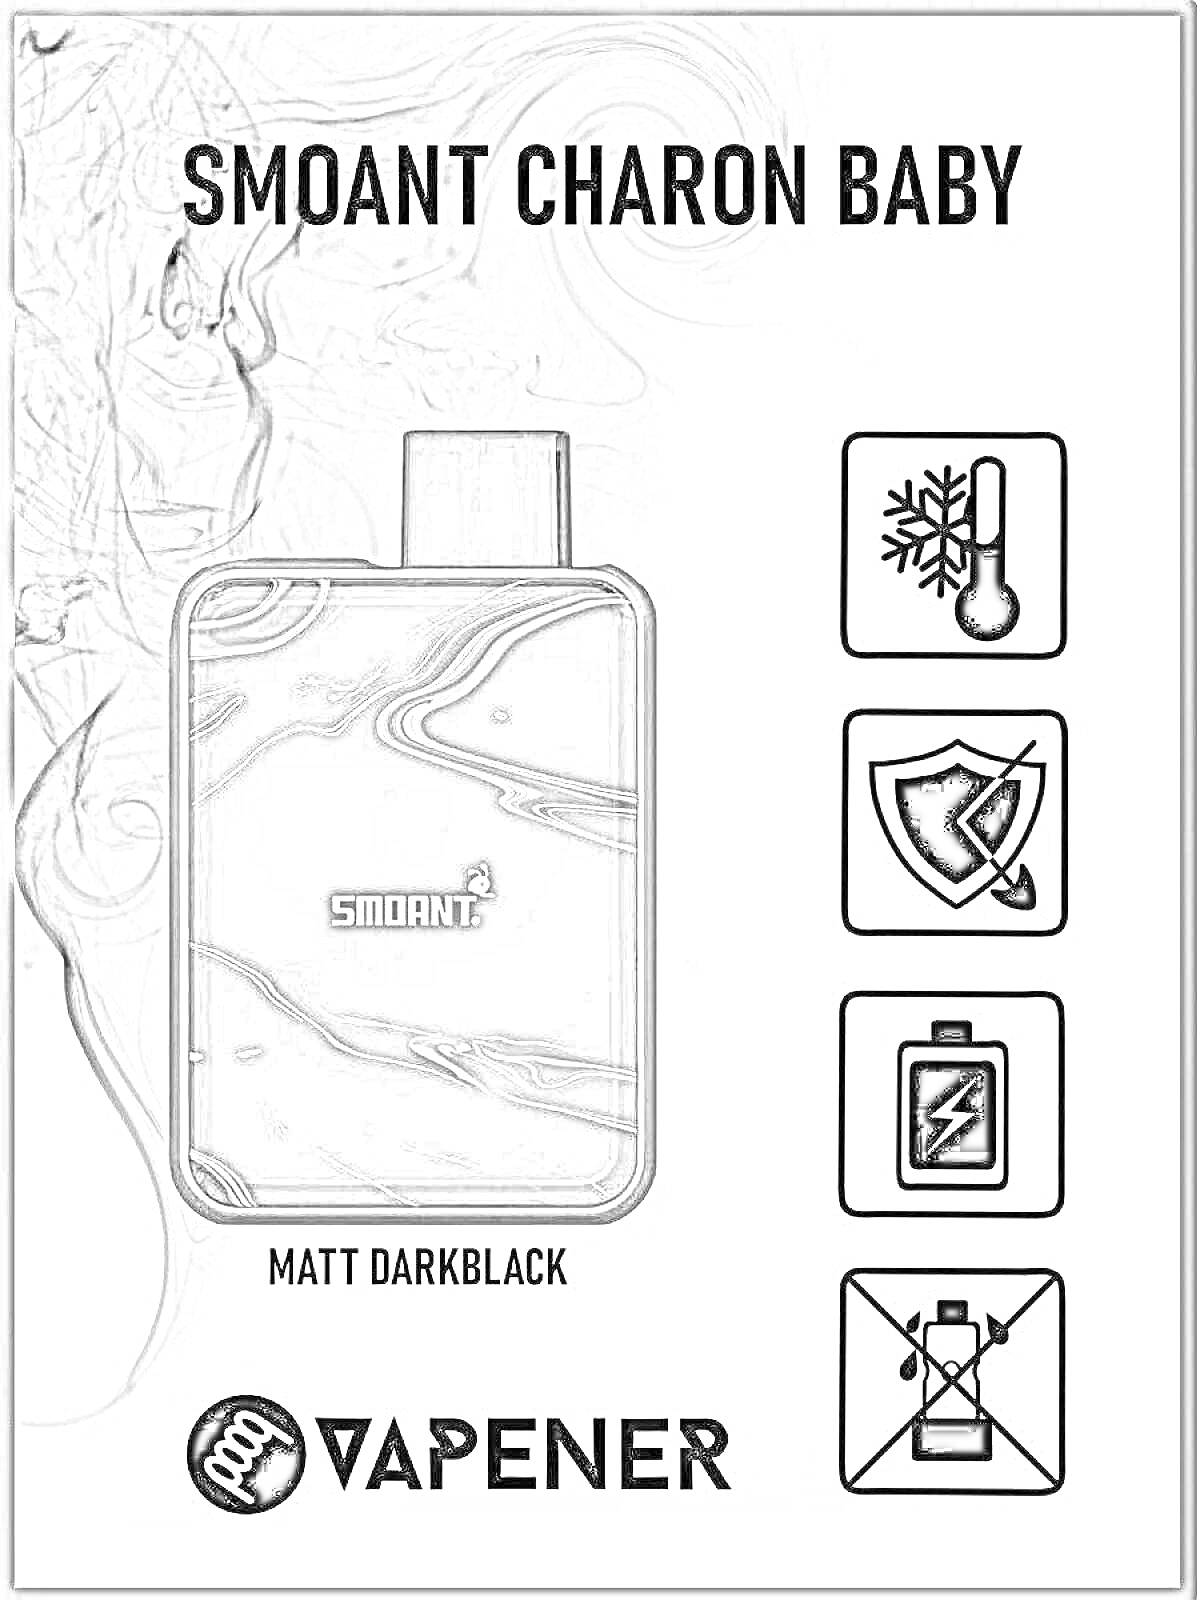 Раскраска Smoant Charon Baby в цвете Matt Darkblack, изображение вейпа, логотип Vapener, символы защиты от охлаждения, защиты, заряда батареи и запрета курения